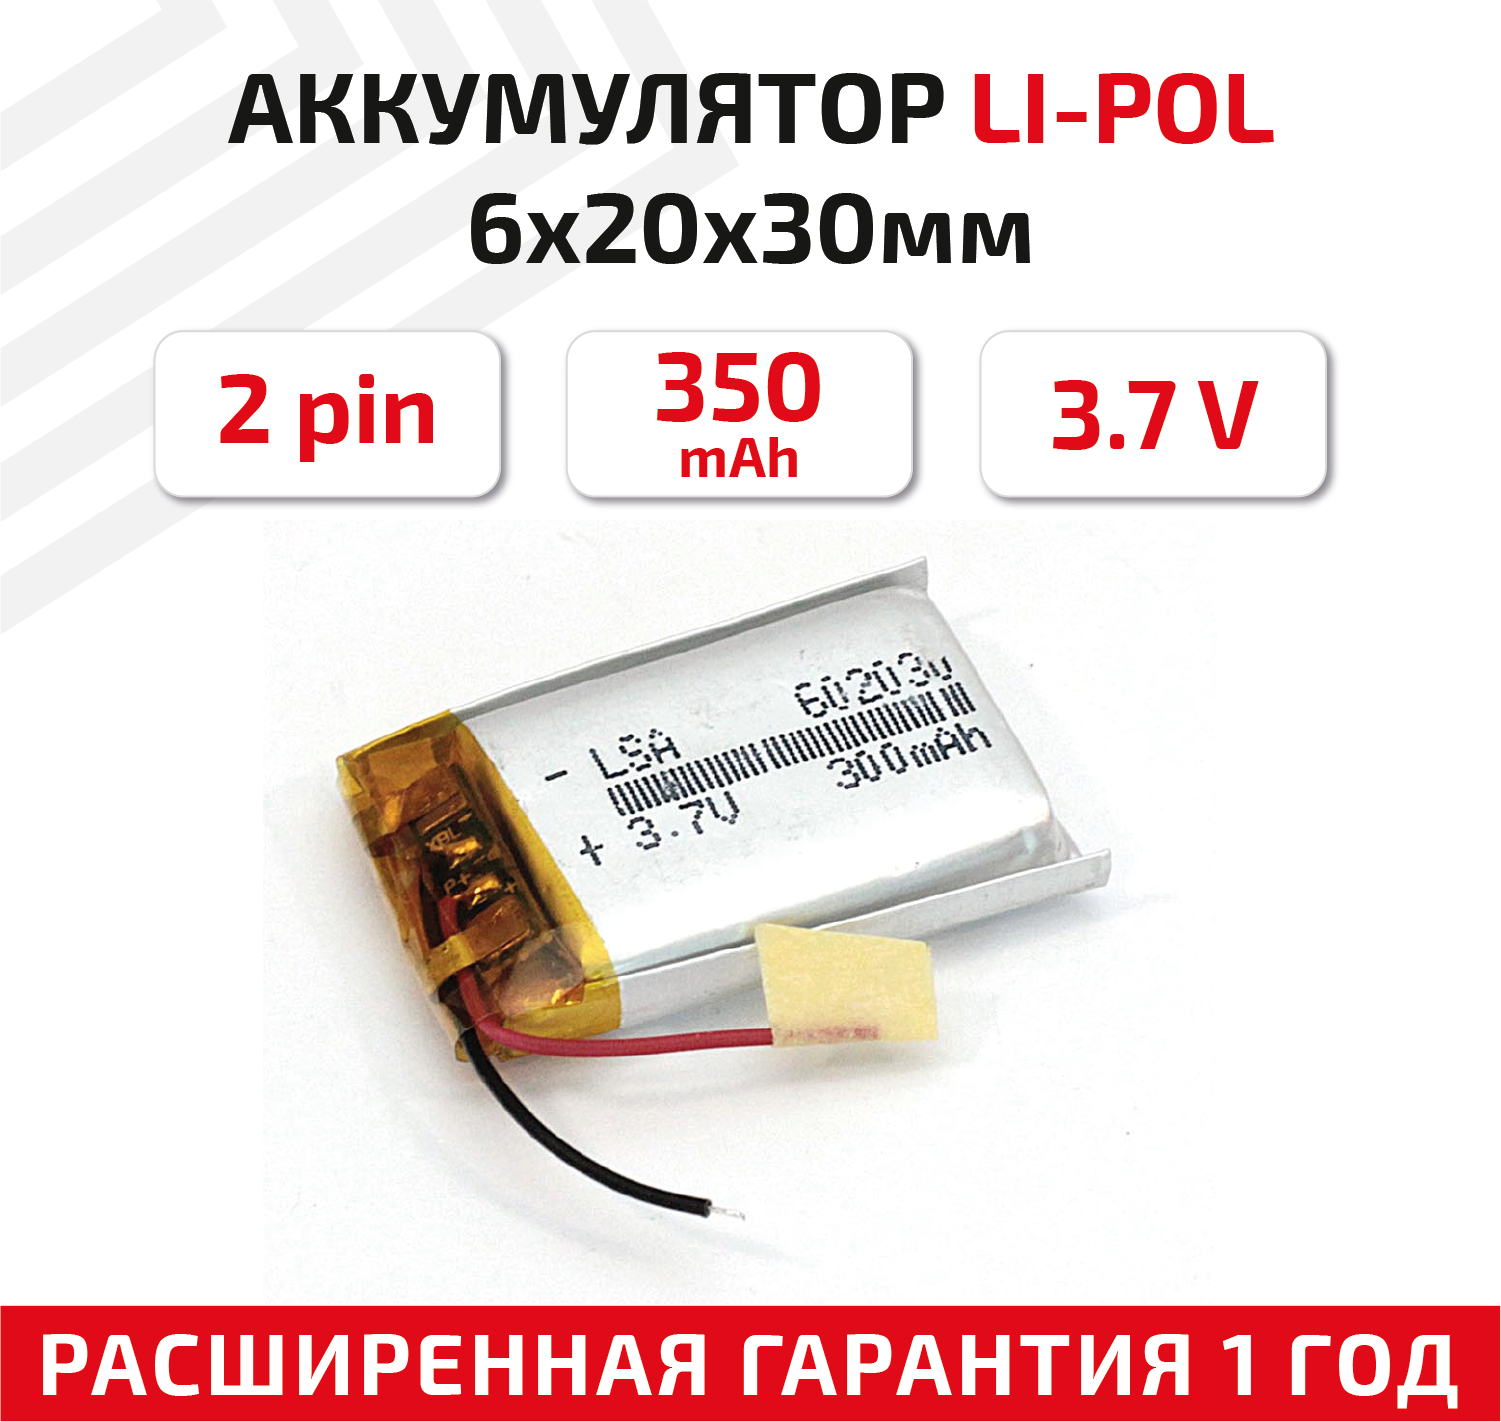 Универсальный аккумулятор (АКБ) для планшета, видеорегистратора и др, 6х20х30мм, 350мАч, 3.7В, Li-Pol, 2pin (на 2 провода)